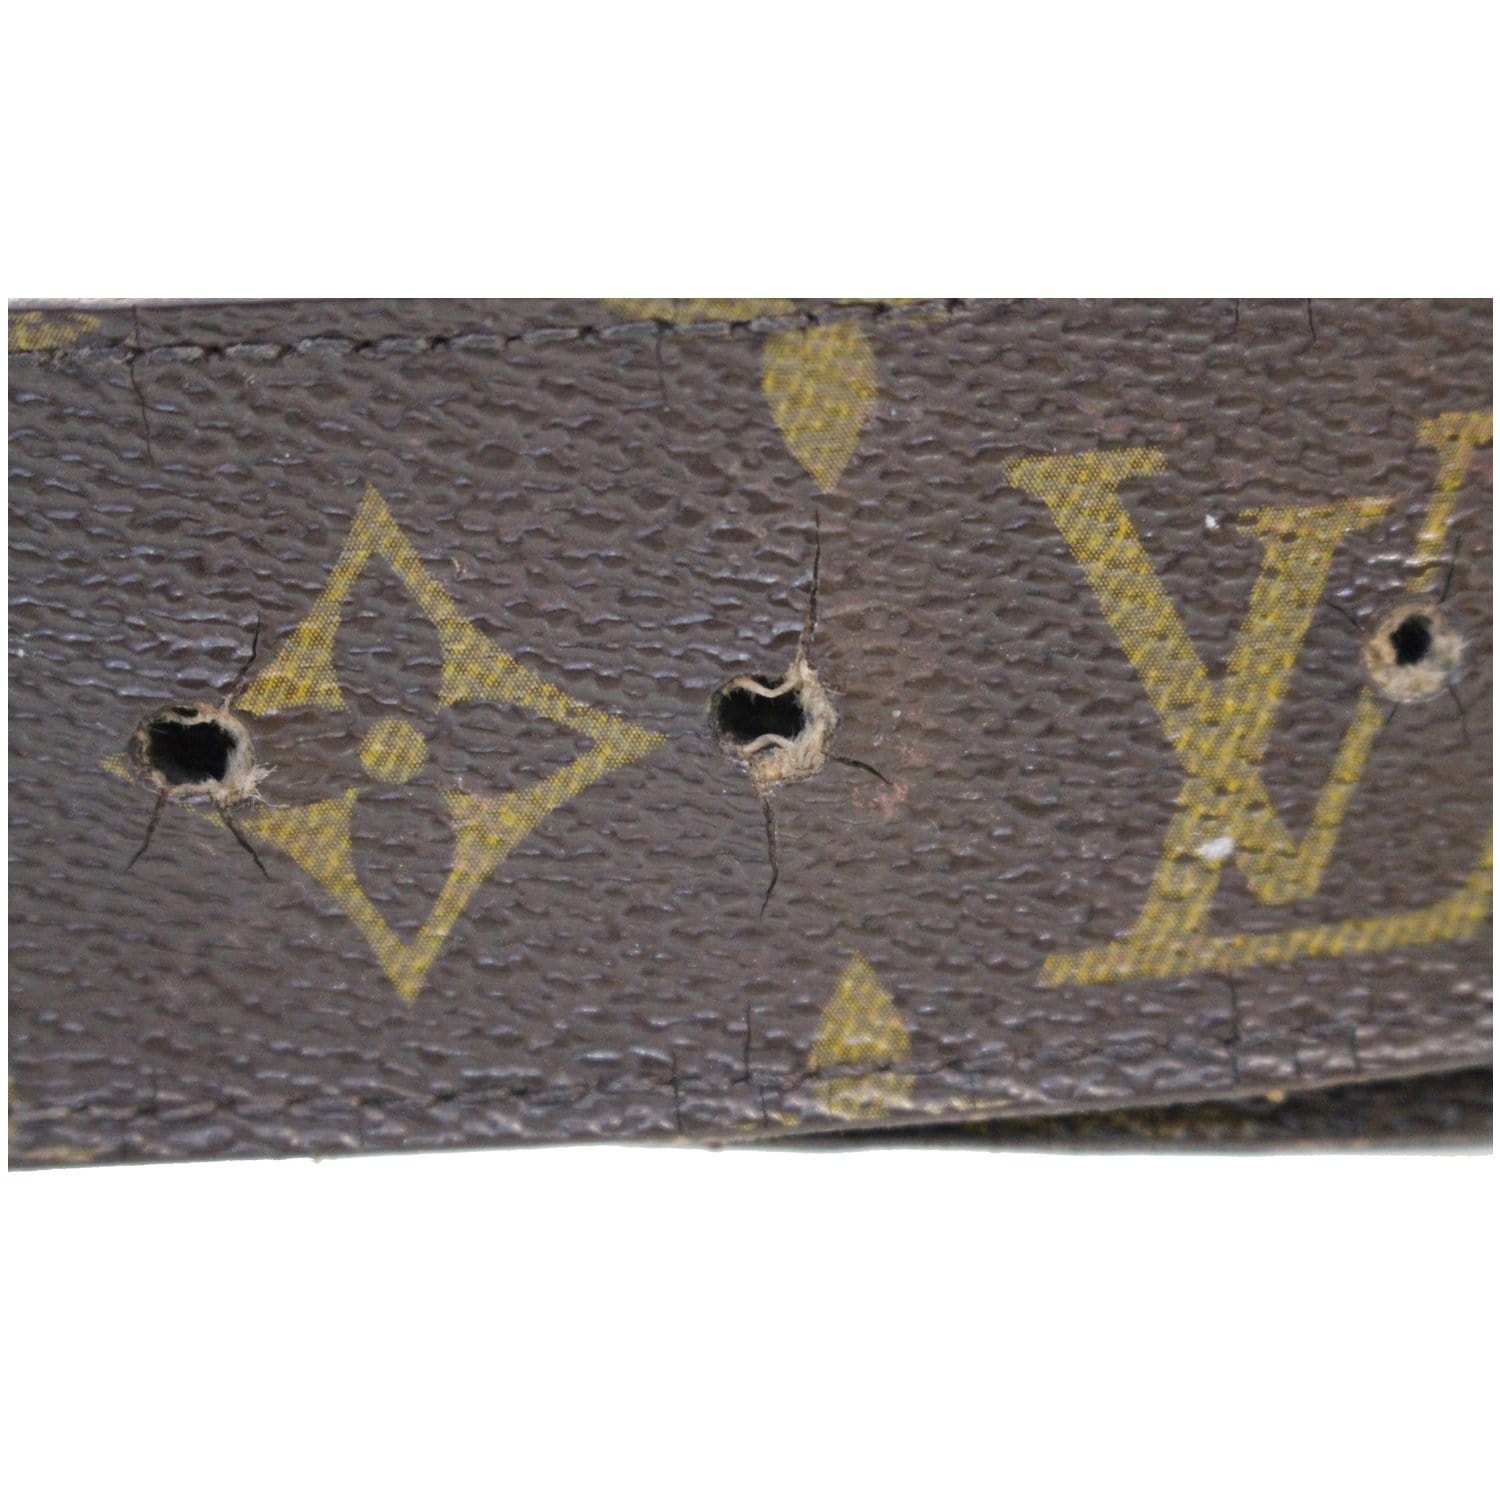 Louis Vuitton LV Initiales Belt Monogram Canvas Wide Brown 2143451